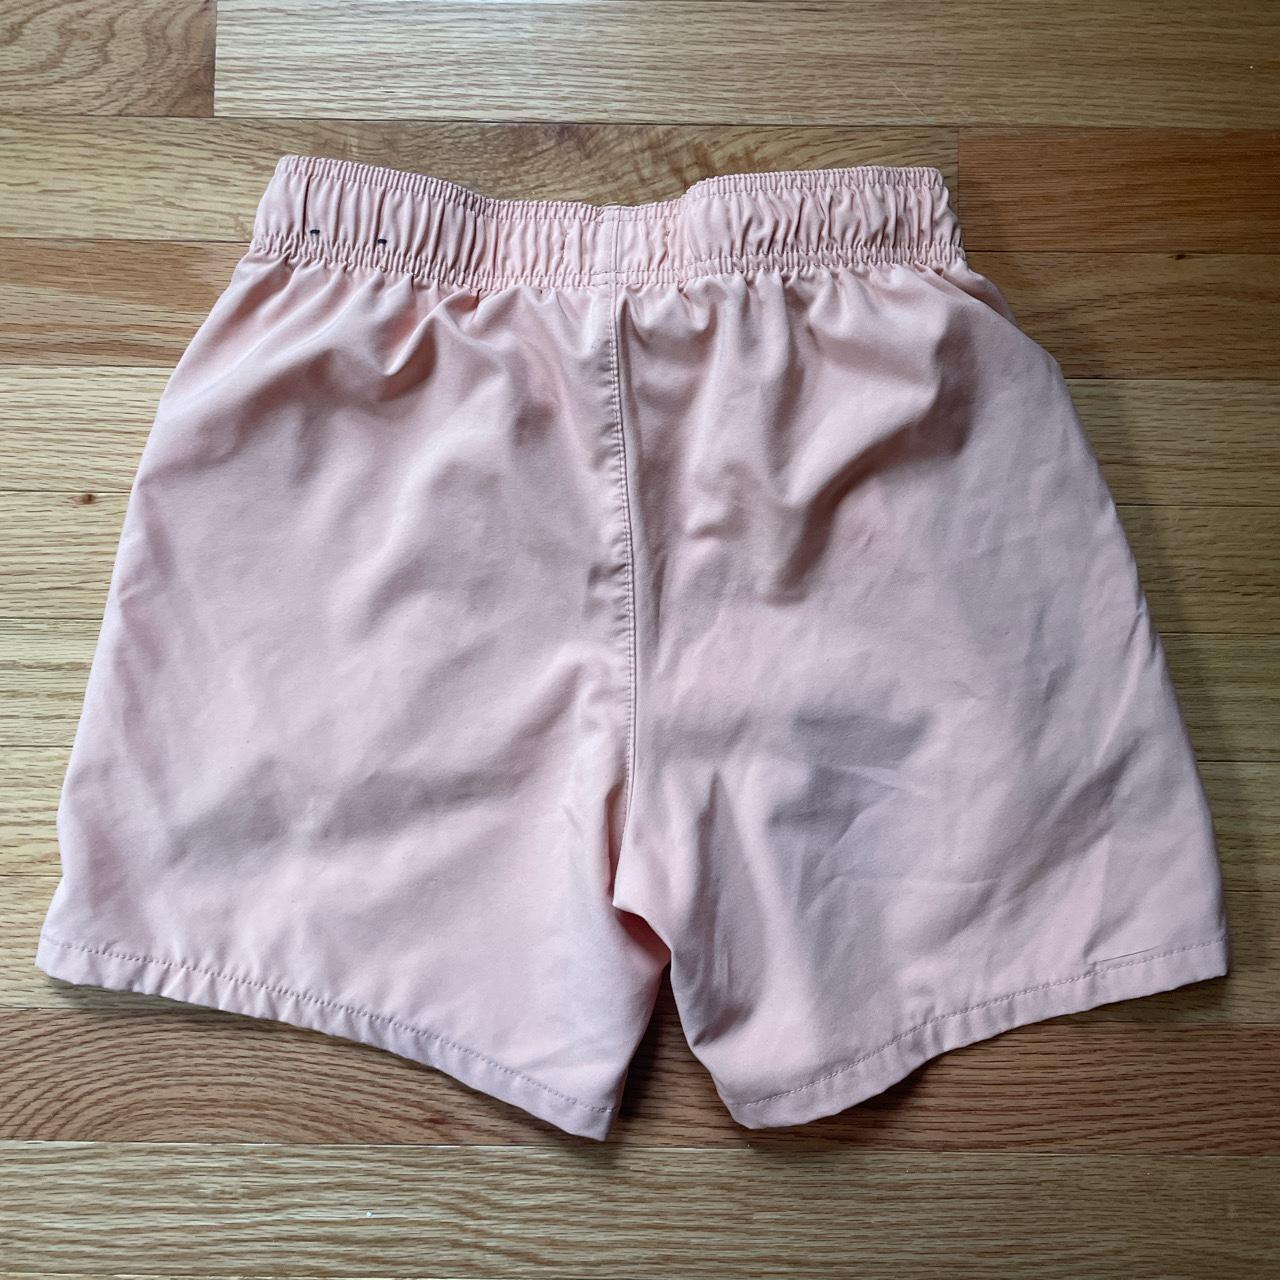 Hollister swim trunks Color - pink Size - Men’s... - Depop